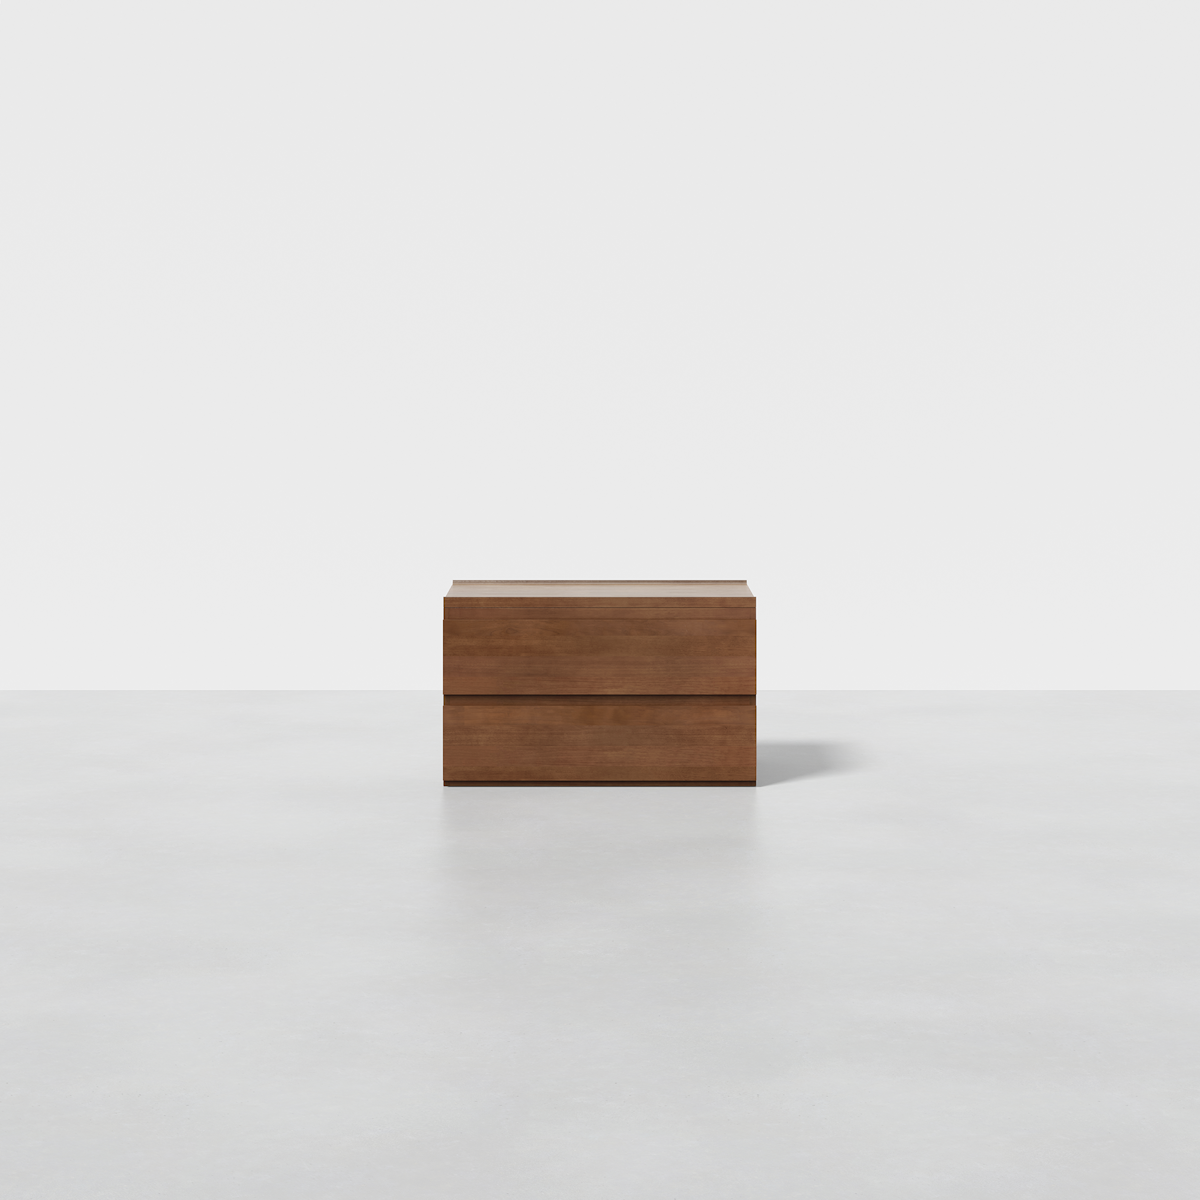 PDP Image: The Dresser (2x1 - Walnut) - Render - Front